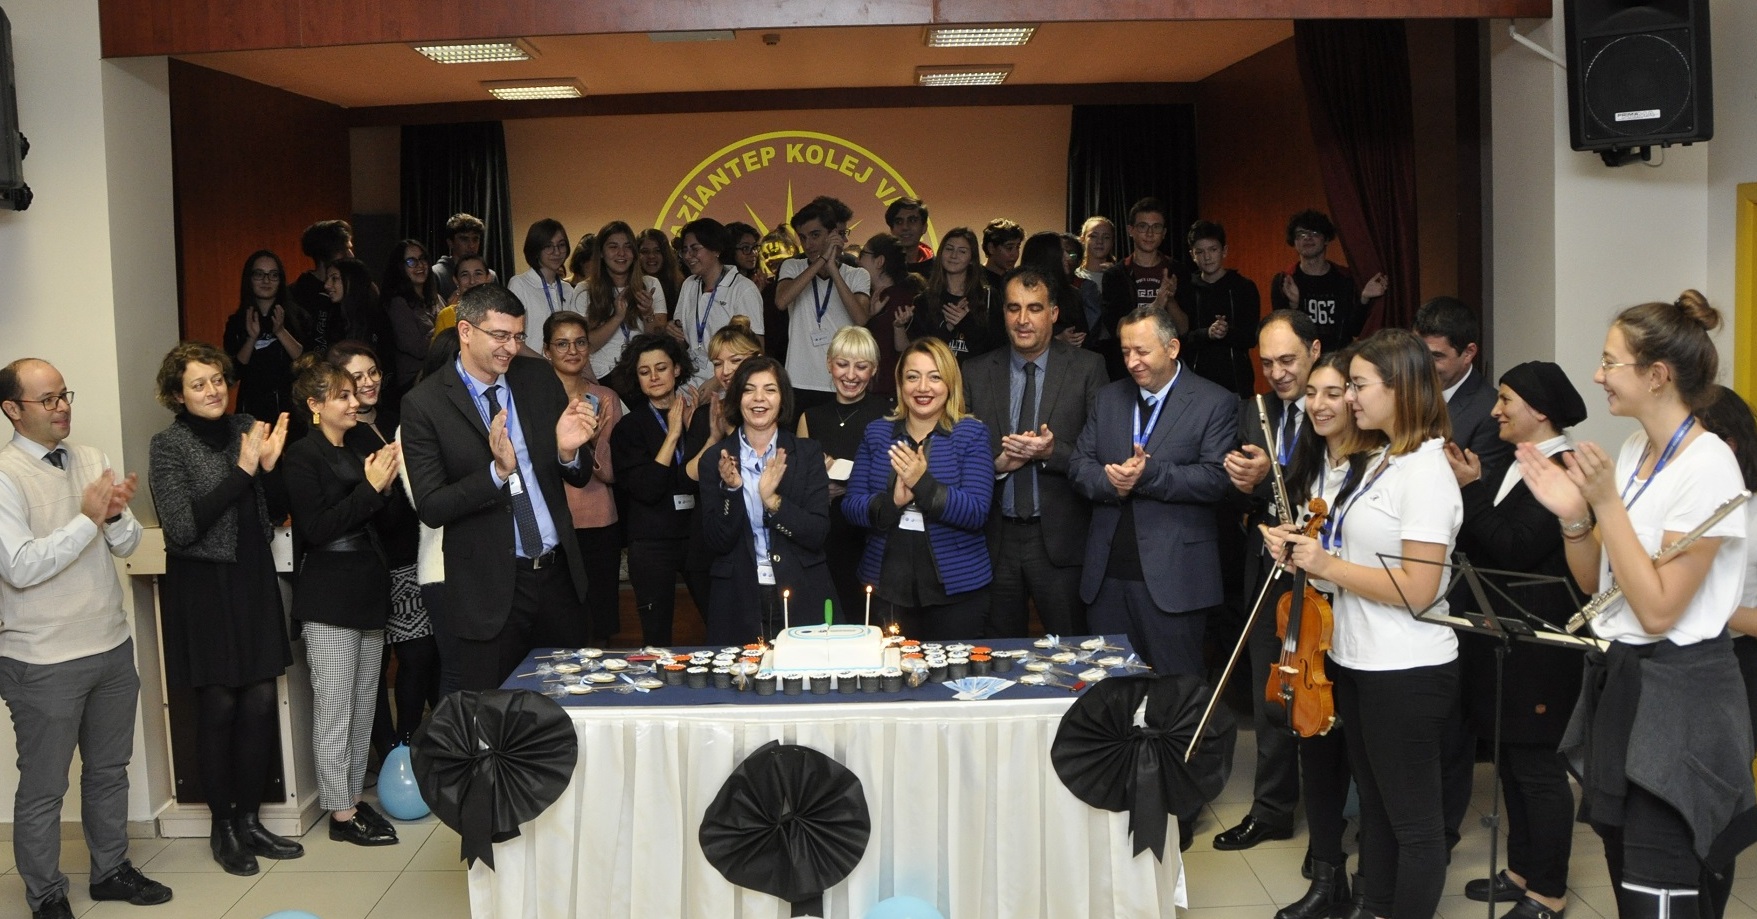 Cemil Alevli Koleji’nde Bakalorya Diploma Programının 50. Yılı kutlandı